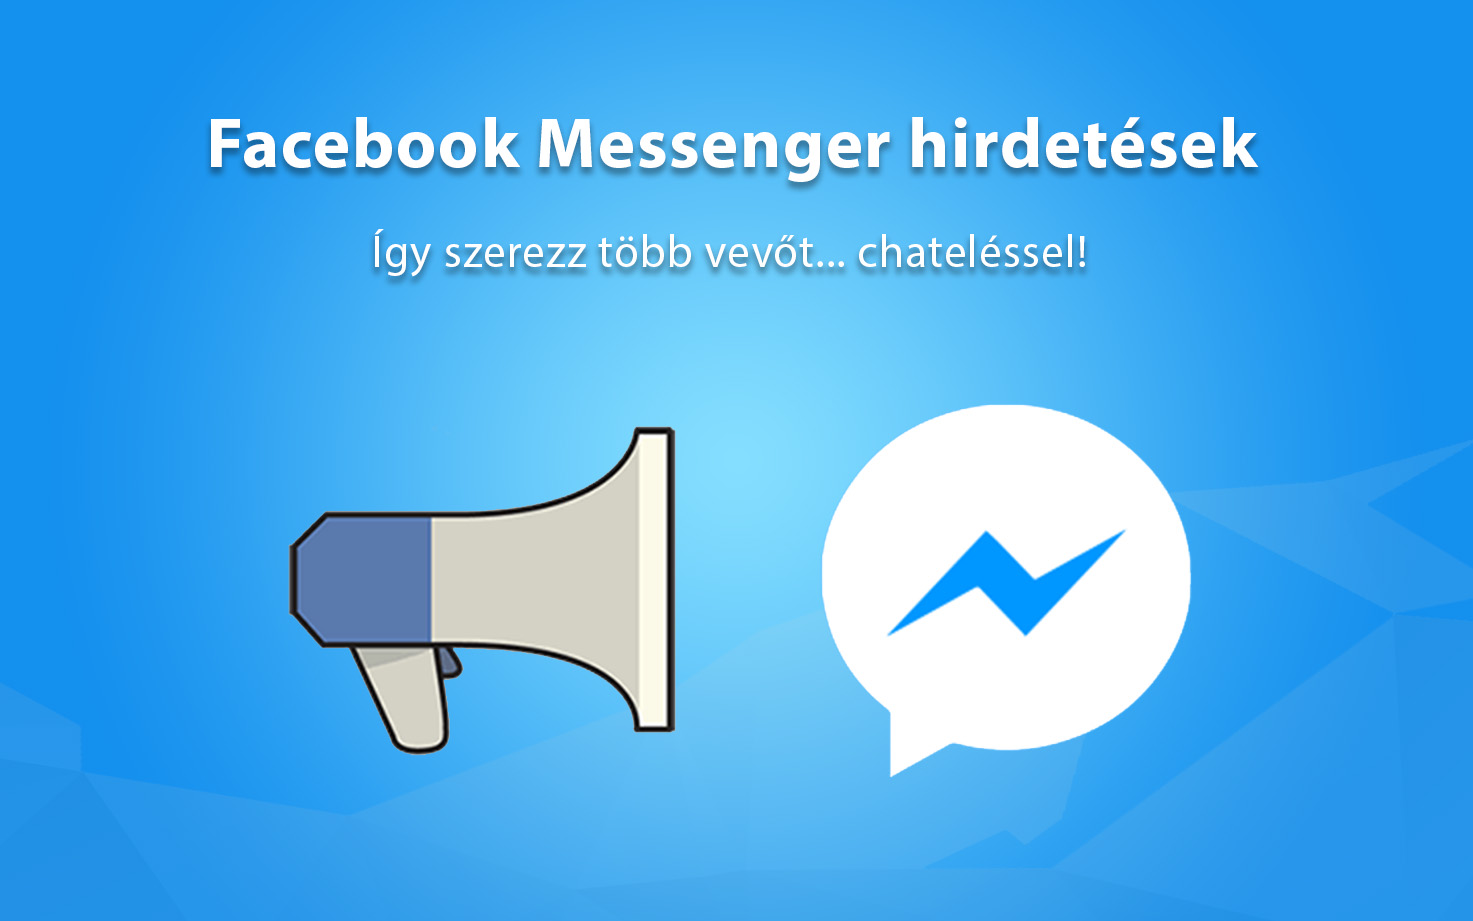 Facebook Messenger hirdetések – Így szerezz több vevőt… chateléssel!